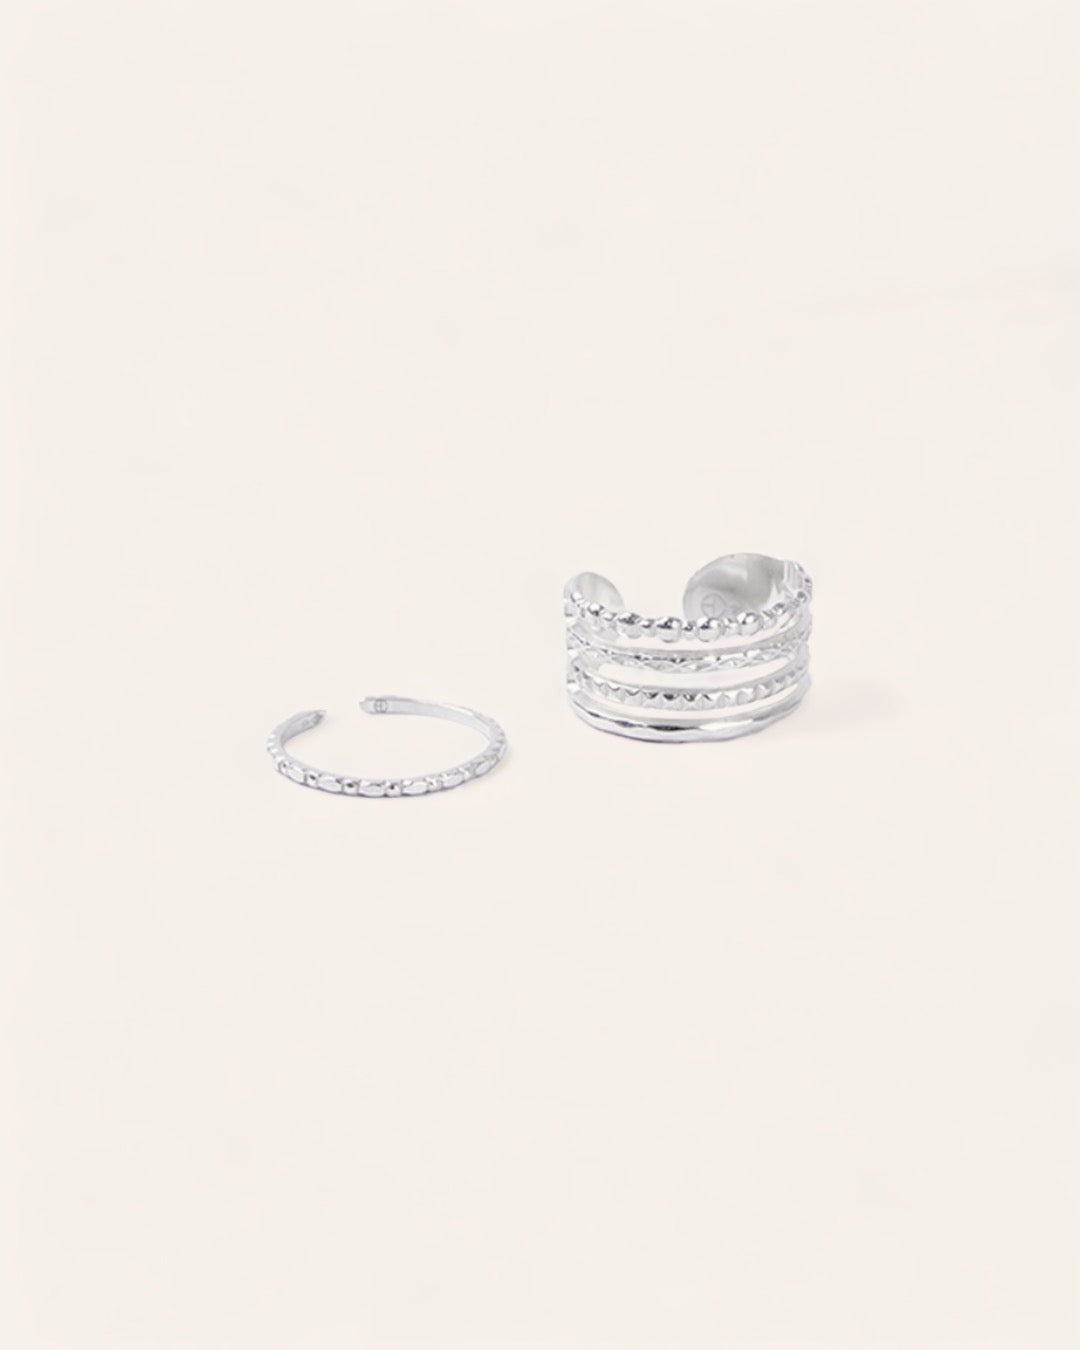 Composition de deux bagues ajustables avec une bague fine avec des petits motifs ronds, et une bague large avec deux anneaux lisses et un anneau avec un design formant plusieurs petits ronds, en argent massif 925.